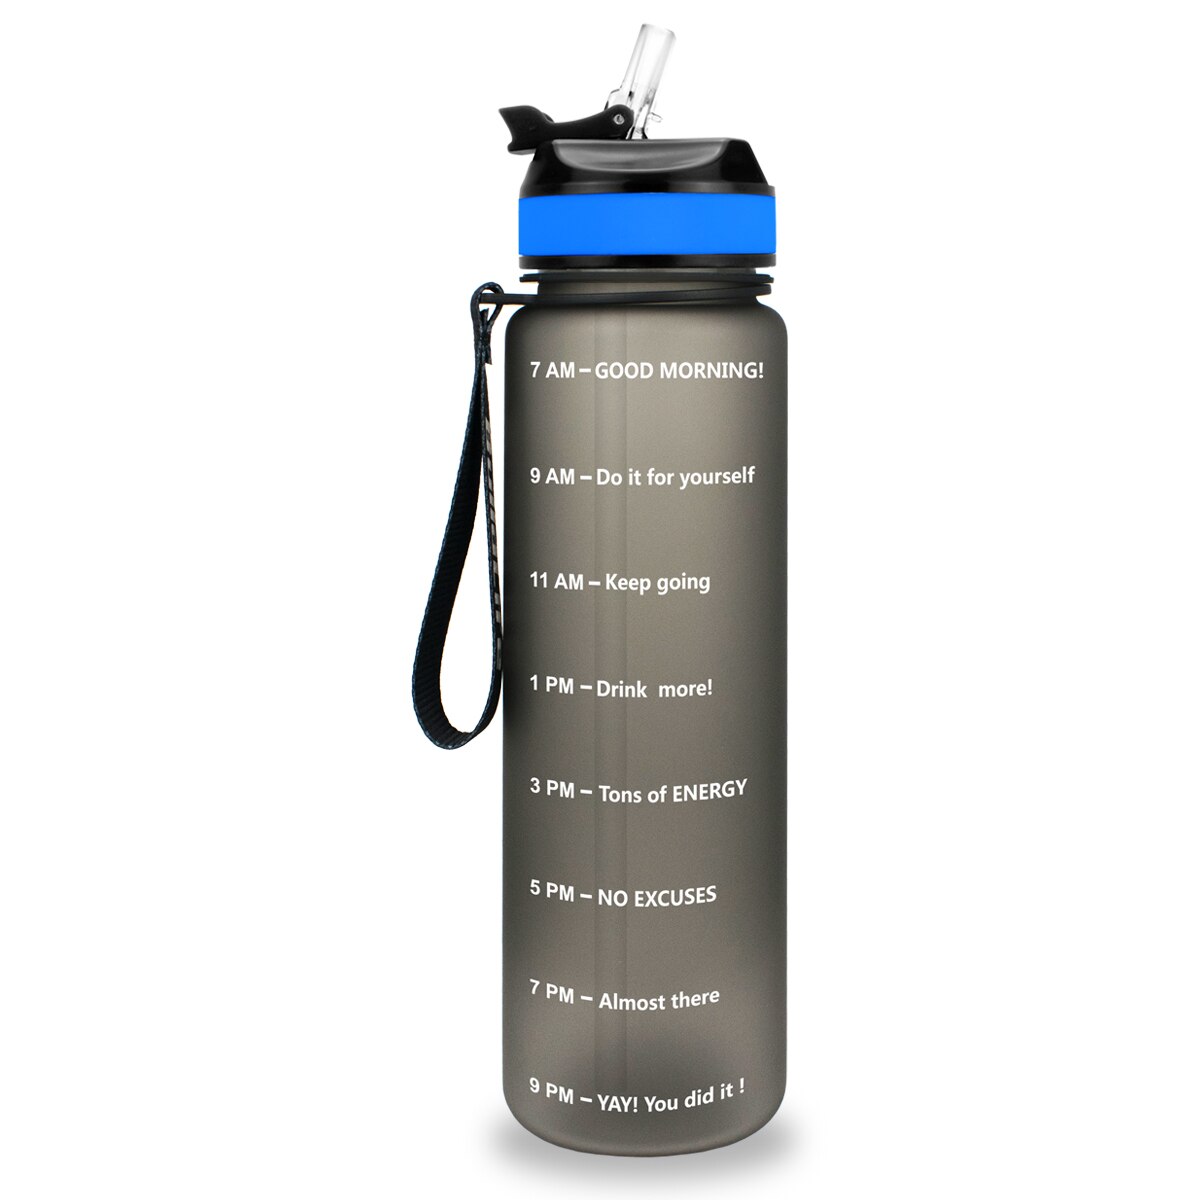 Eine schwarze Sporttrinkflasche mit einer Zeitmarkierungen sowie motivierenden Spruechen für verschiedene Tageszeiten. Die Flasche hat eine schwarze Trageschlaufe und einen Deckel mit einem aufklappbaren Trinkverschluss.